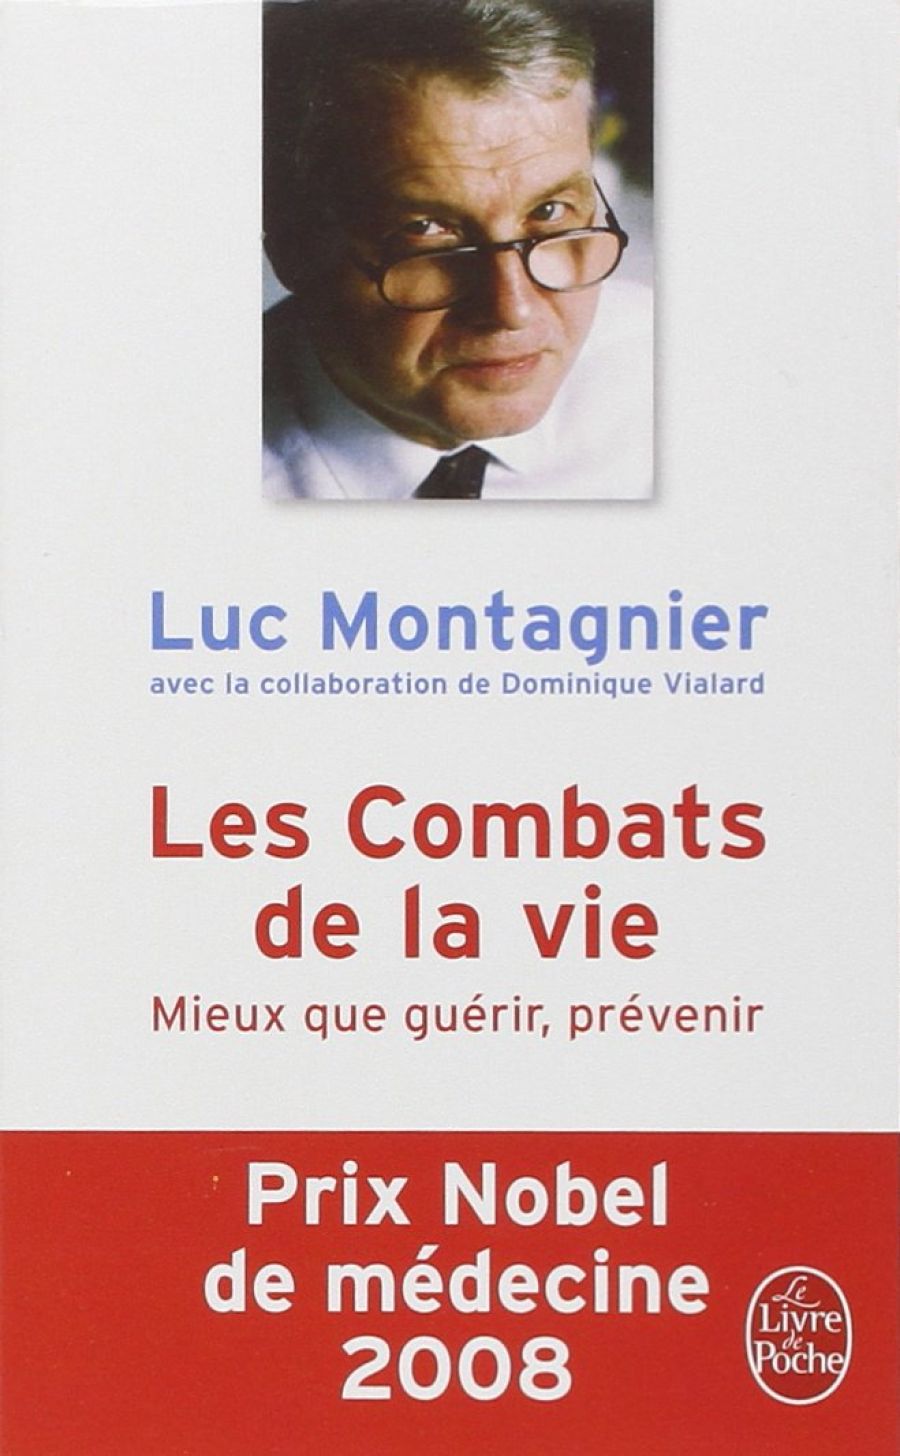 Couverture du livre de Luc Montagnier : "Les combats de la vie"